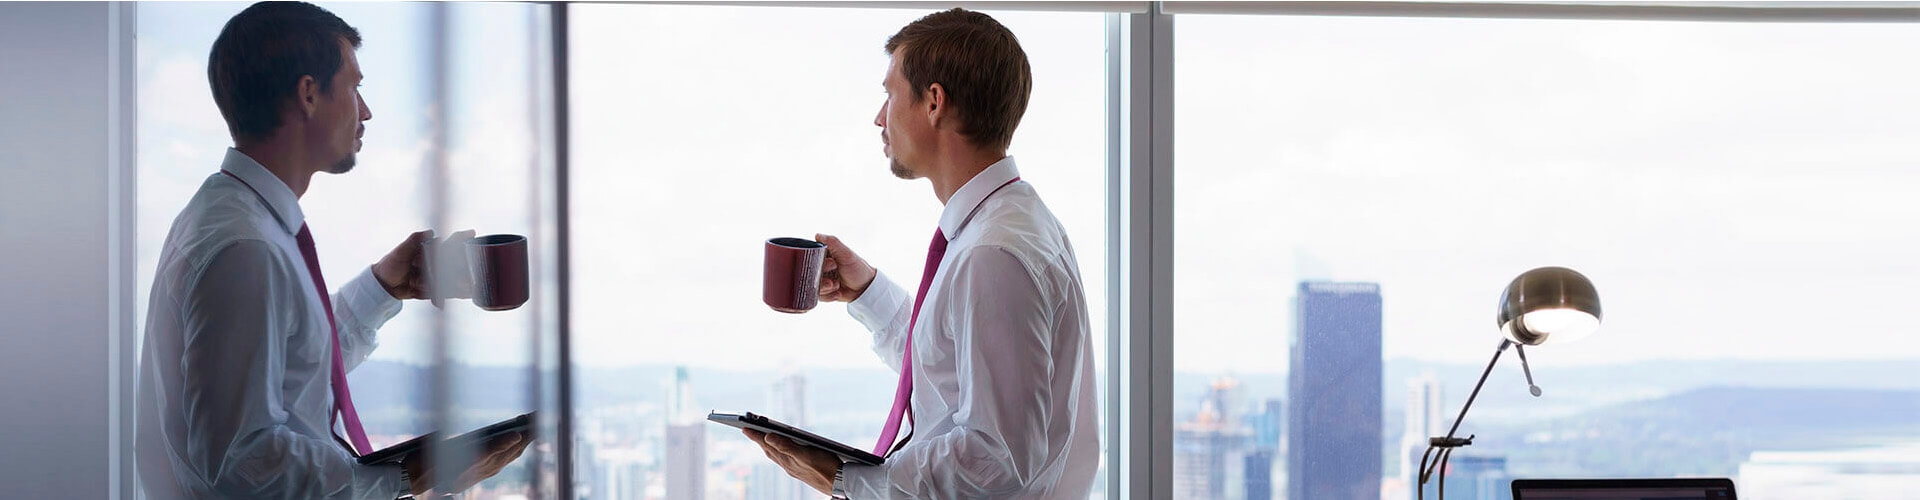 Financiamiento para empresa factoring Internacional - Un hombre con camisa y corbata, con una taza en la mano mirando por la ventana